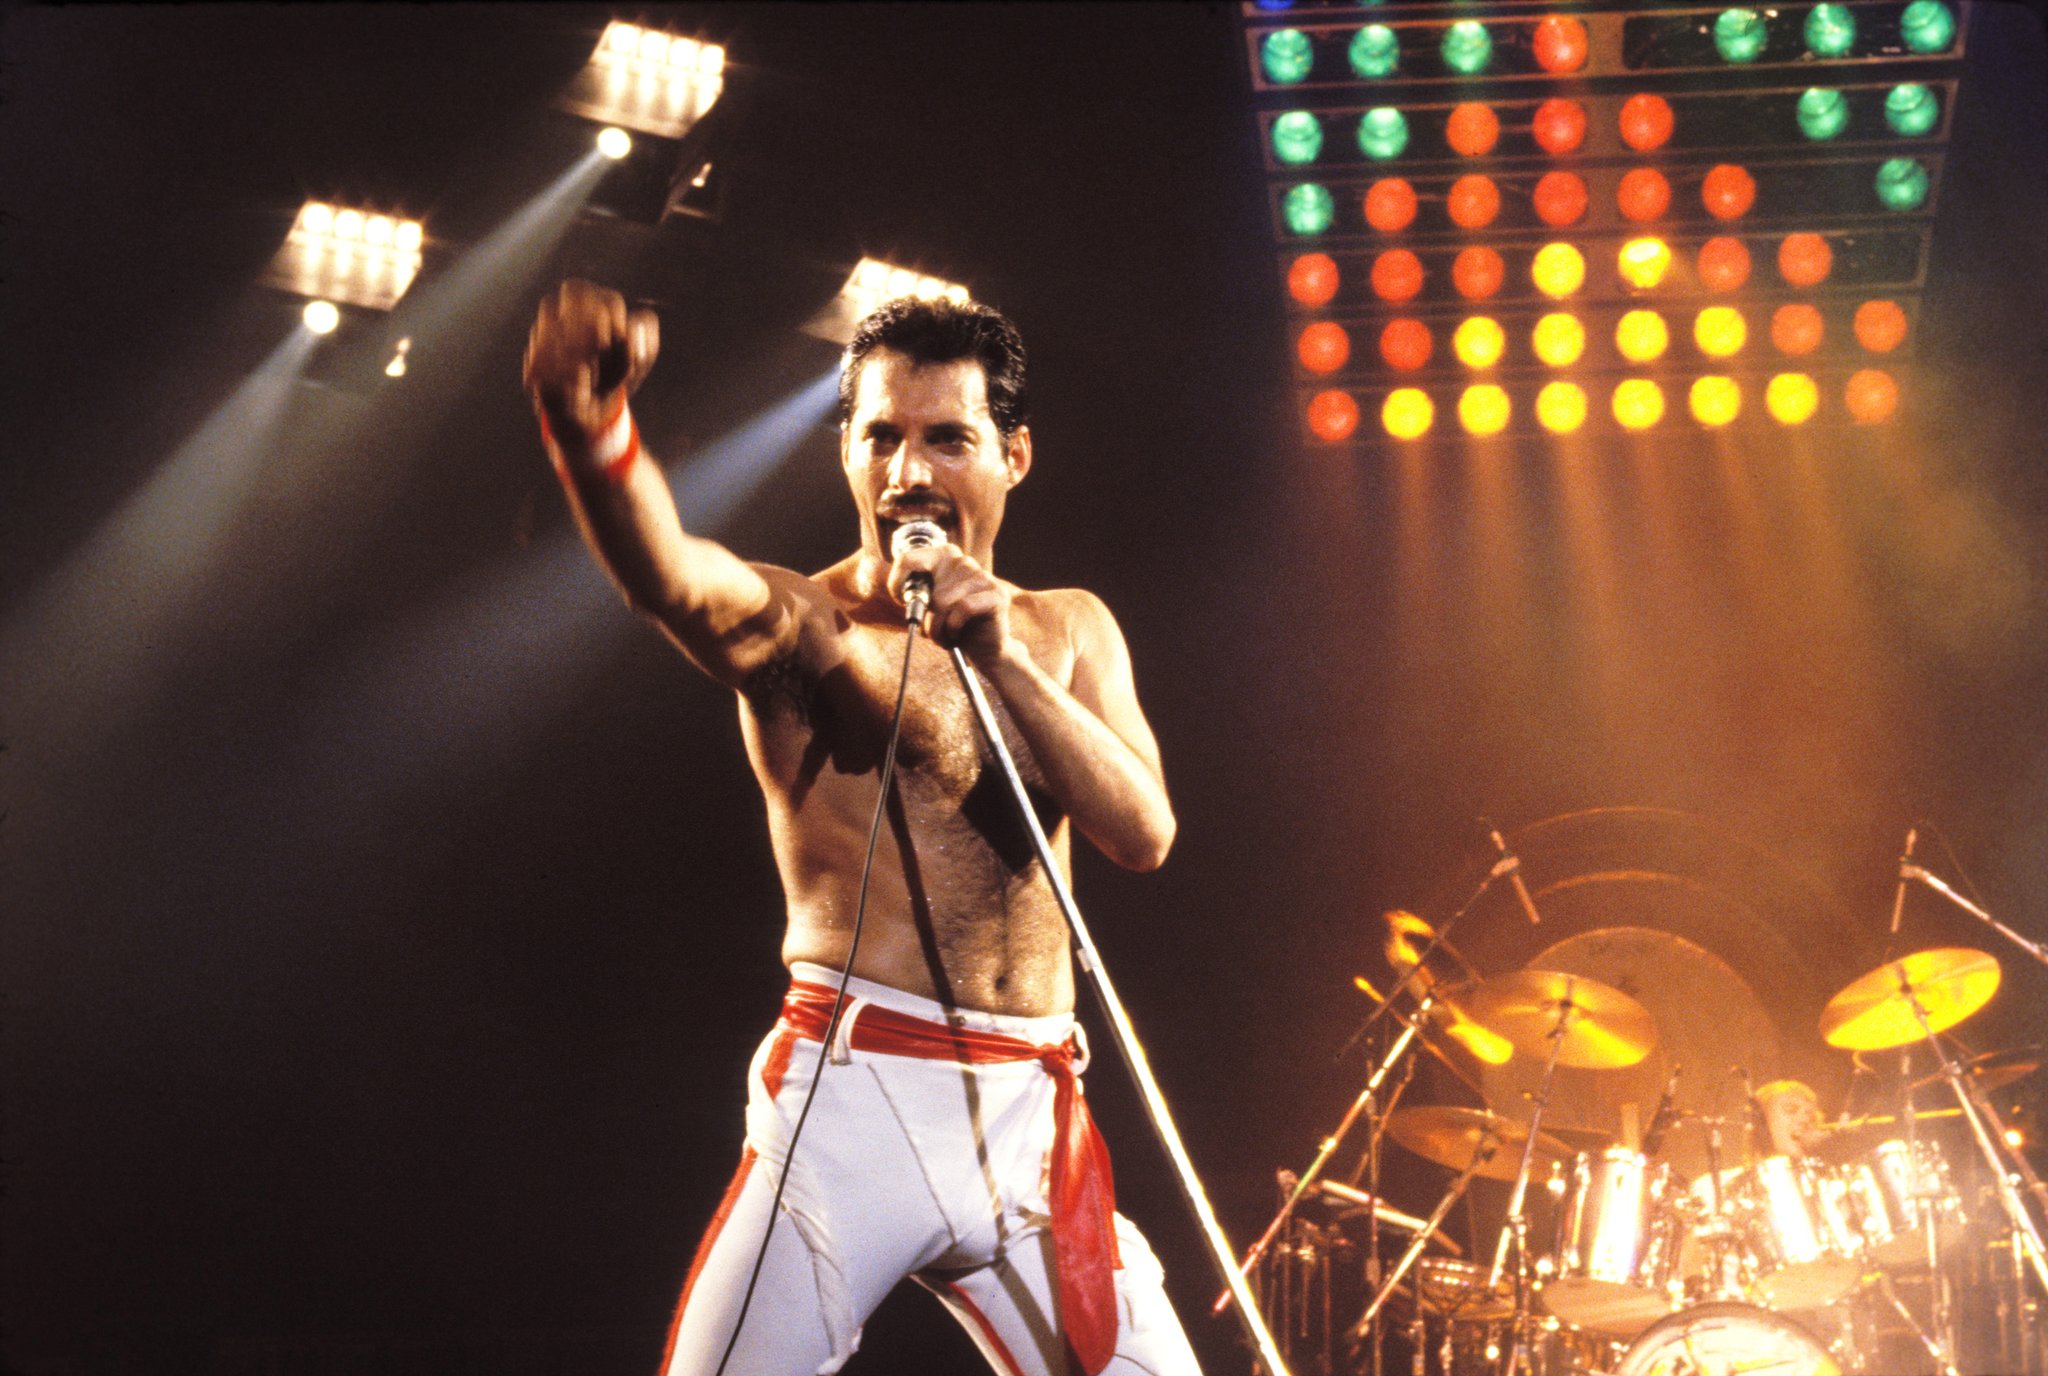 Elton John surpreende com revelação sobre os dias finais de Freddie Mercury